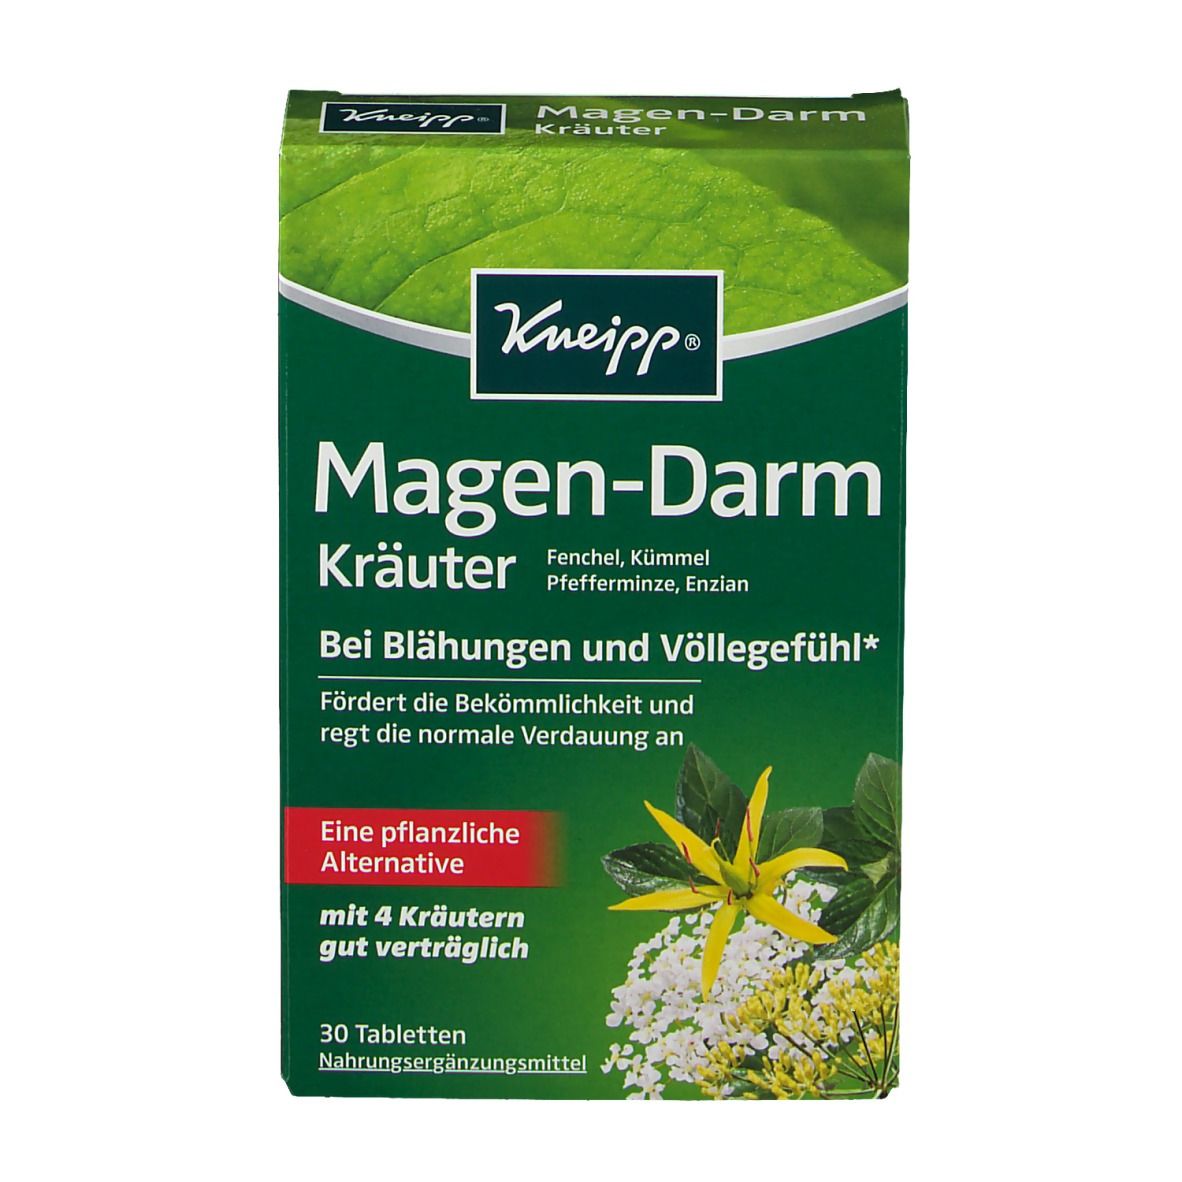 Kneipp® Magen-Darm-Kräuter